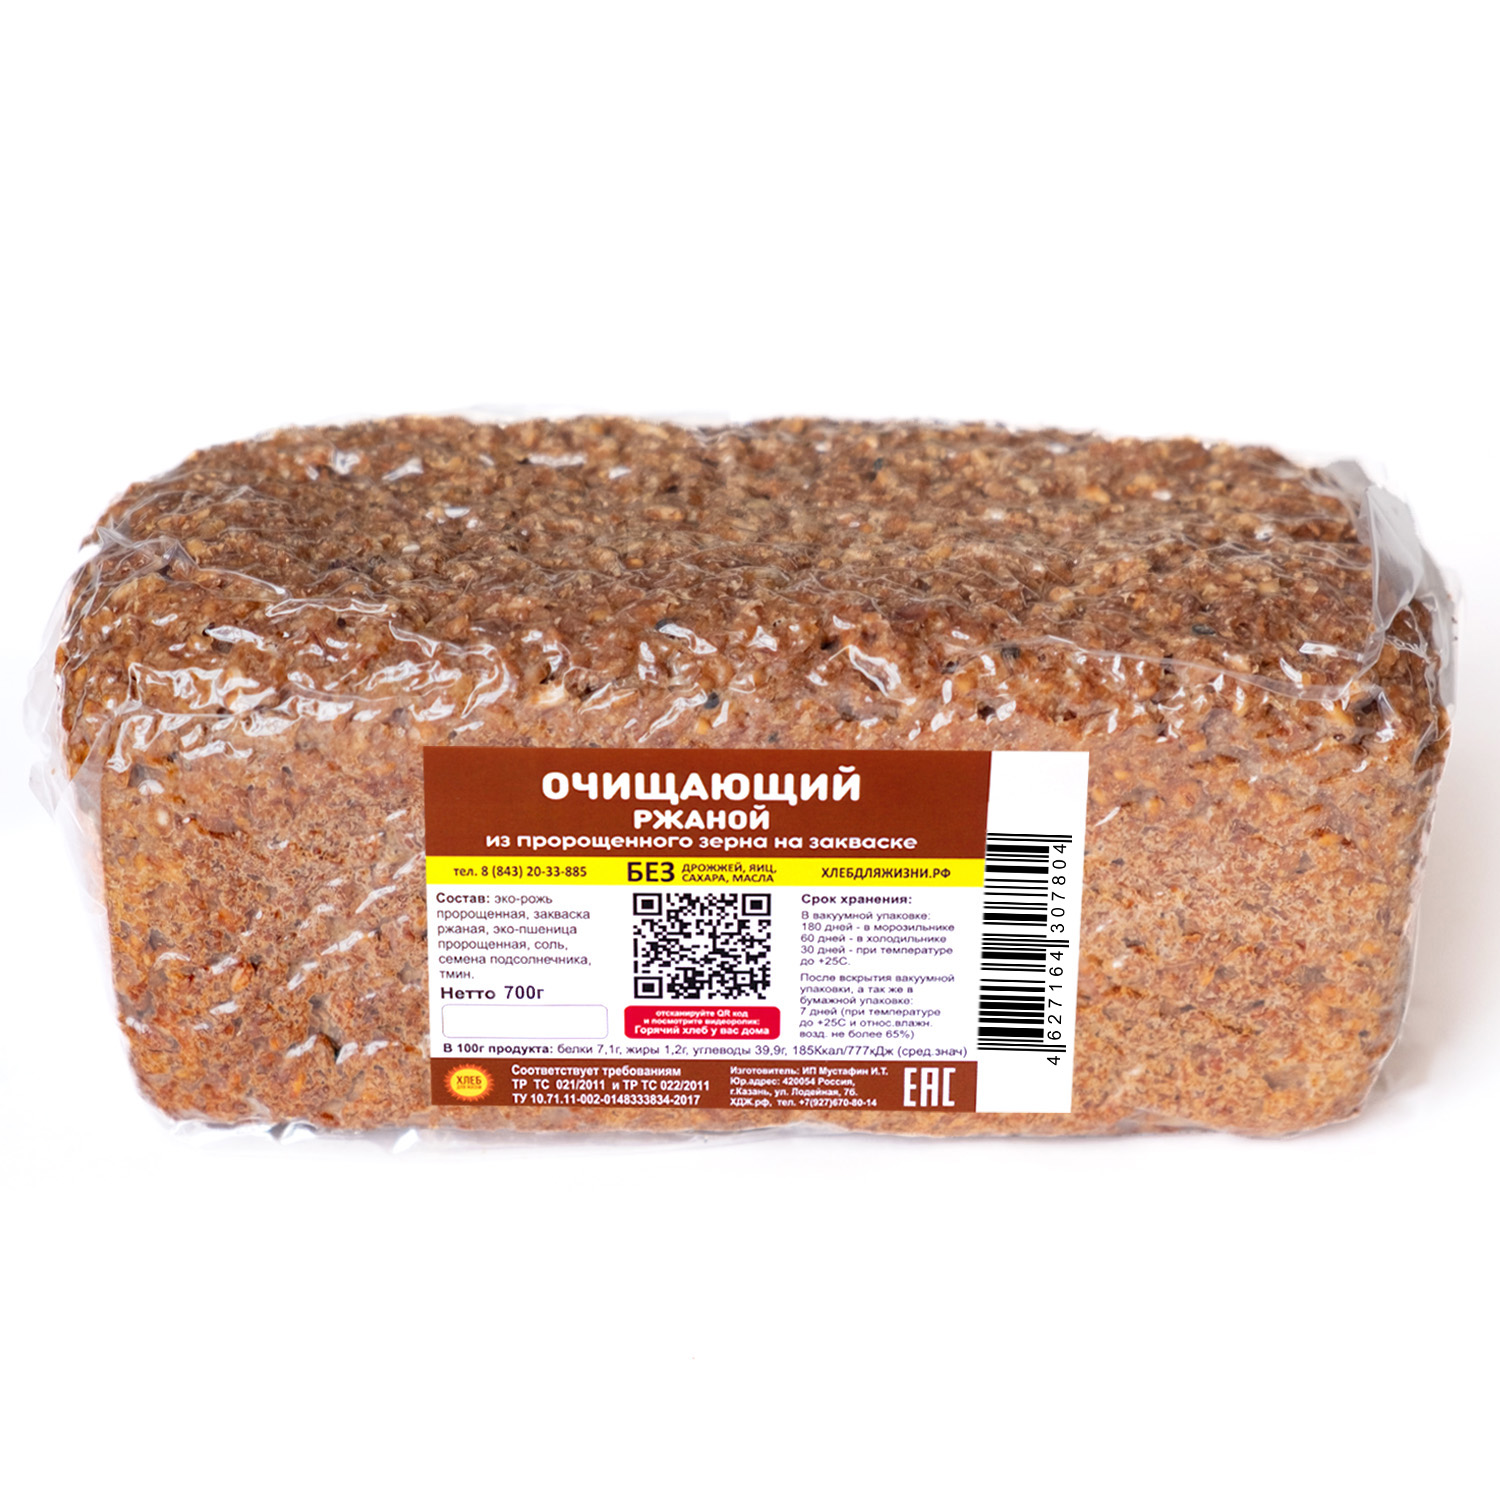 Хлеб для Жизни Ржаной очищающий, цельнозерновой, бездрожжевой, на закваске, 700 г